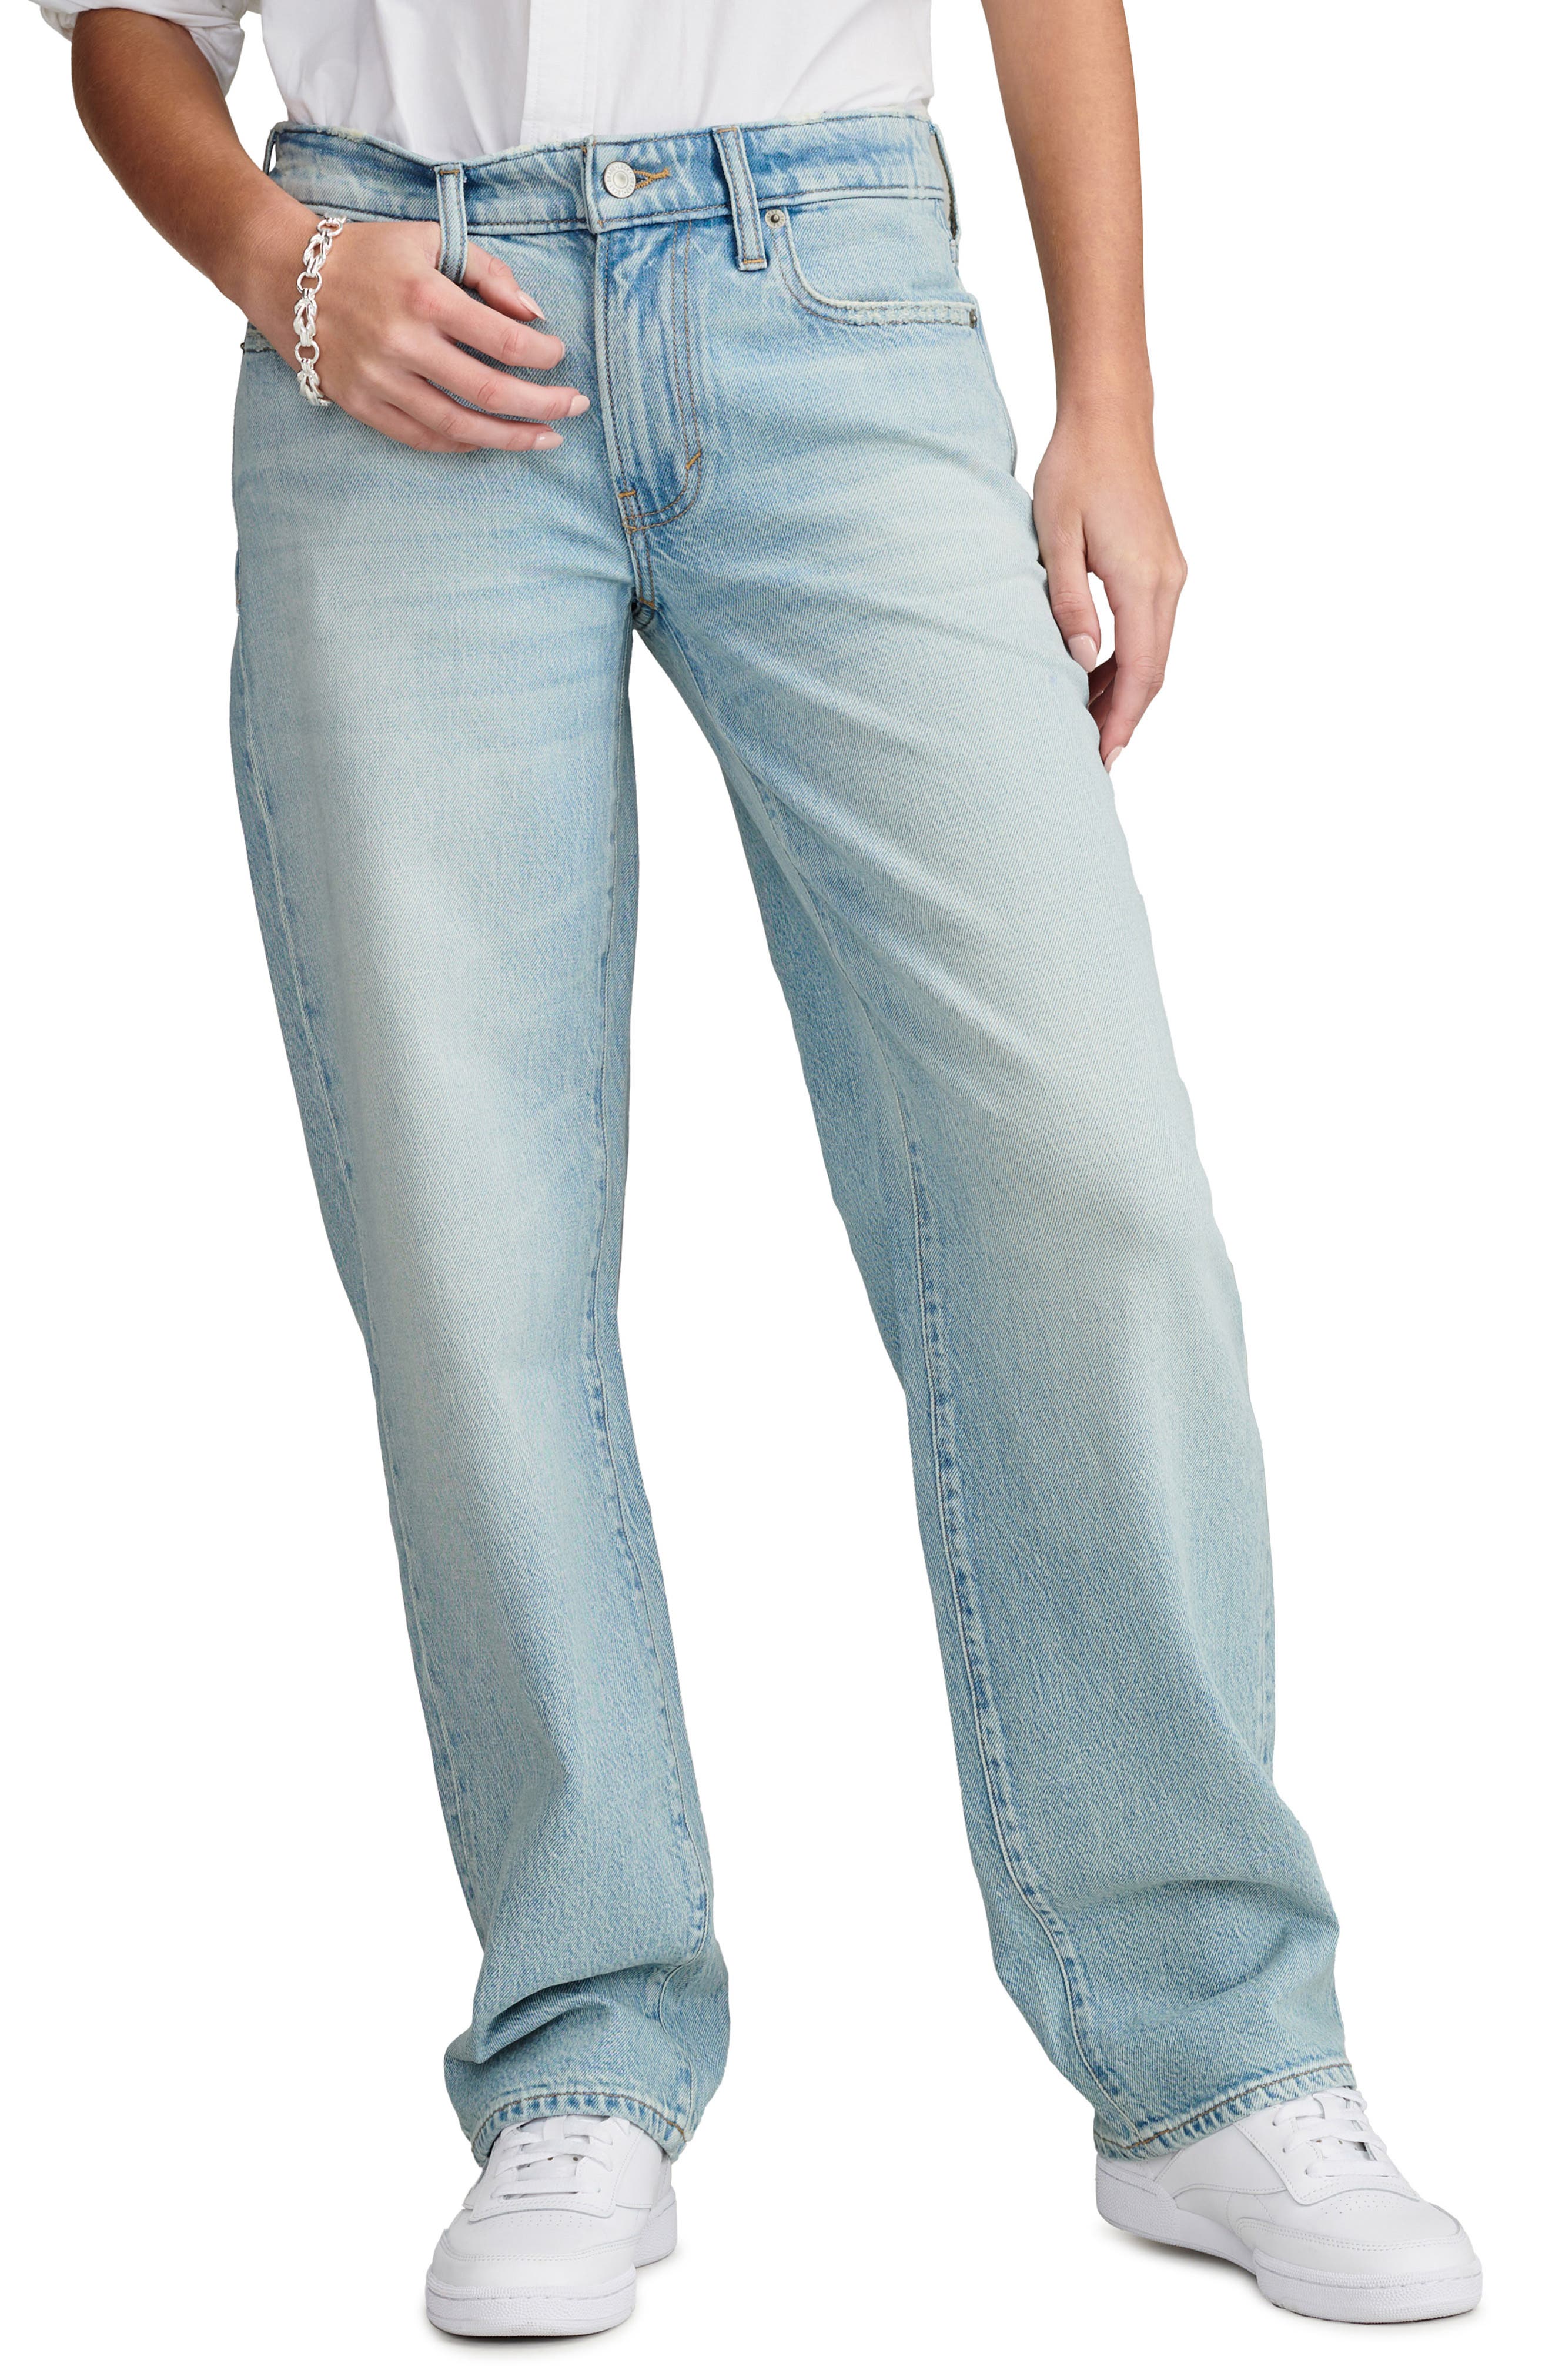 Lucky Brand Drew Mom Jeans - Macy's